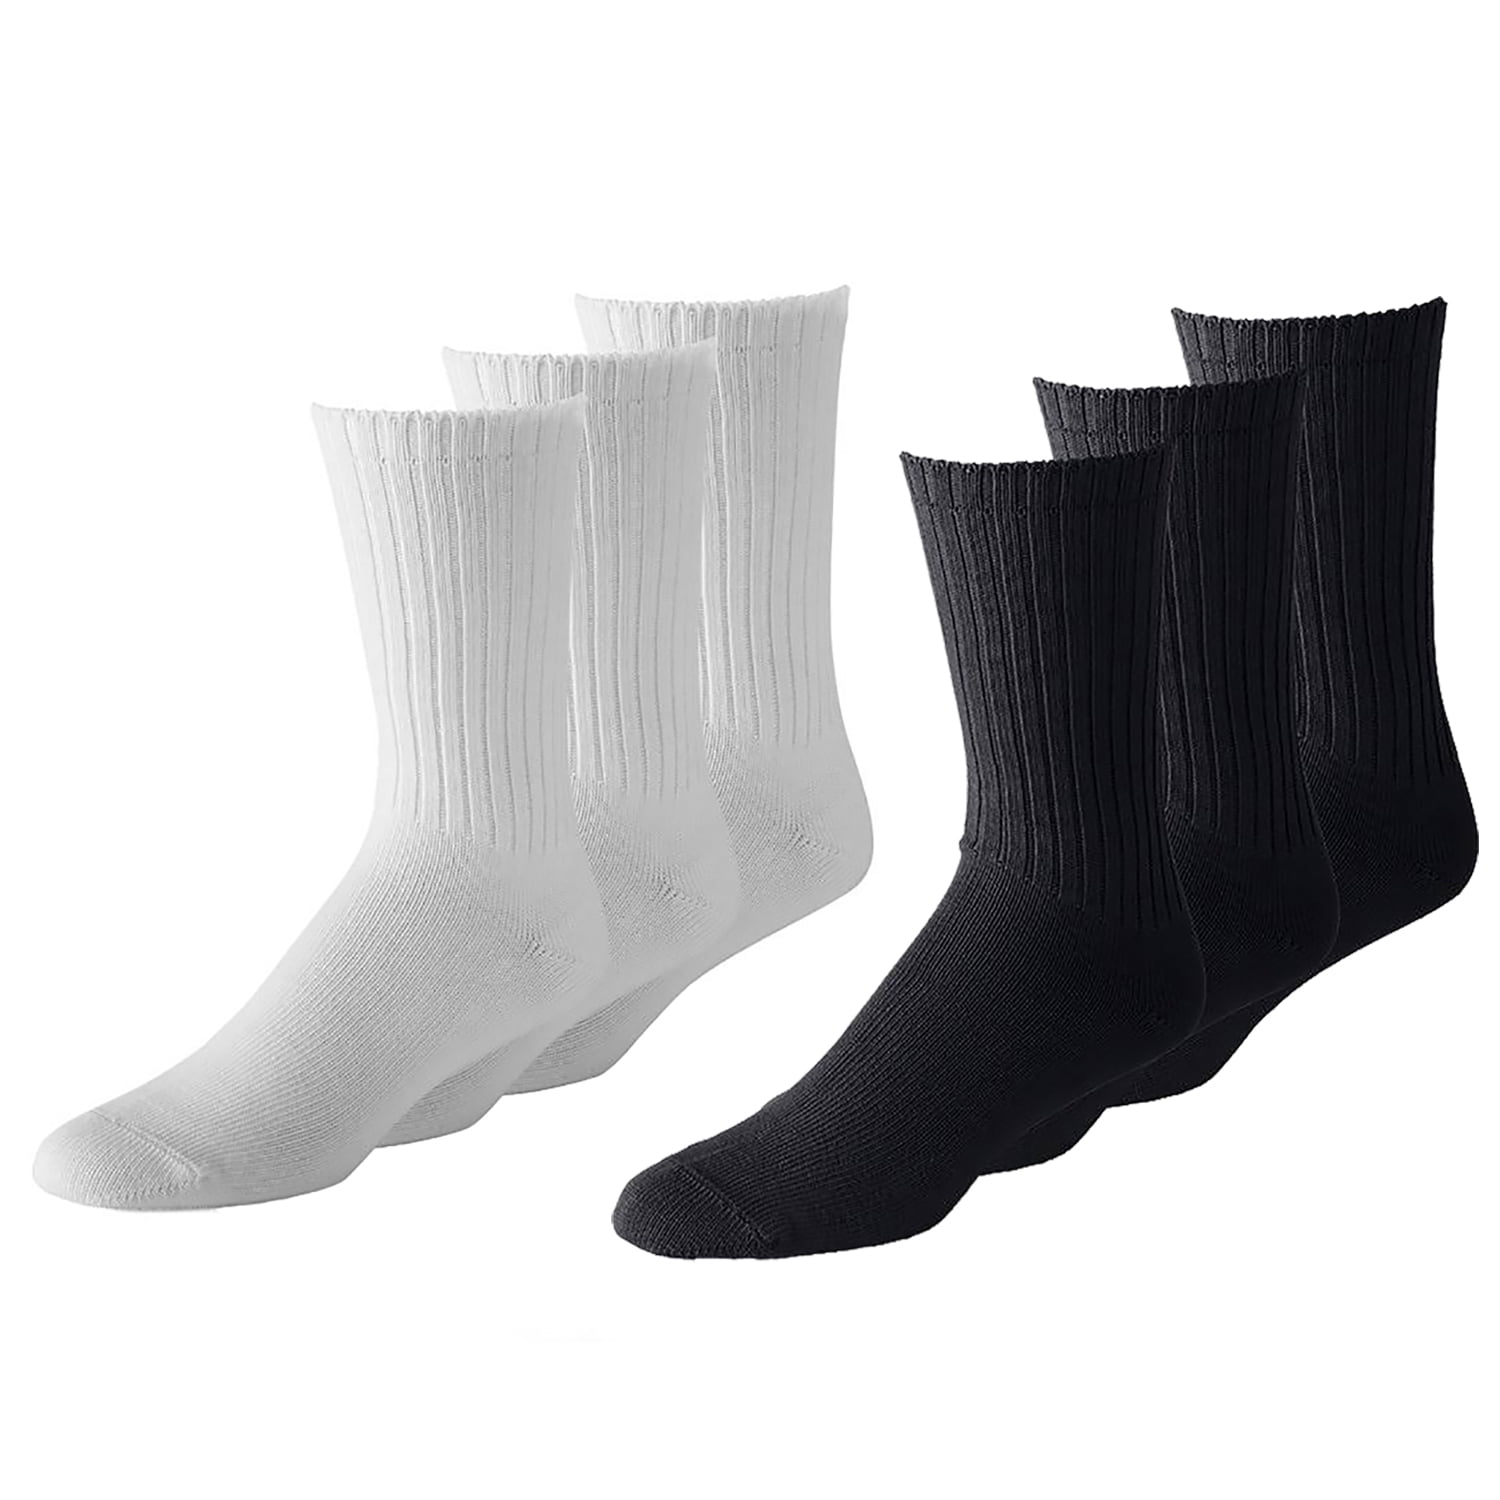 Wholesale Lot Men Women USA Logo Black/Gray Ankle Socks Sports Cotton 9-11 10-13 